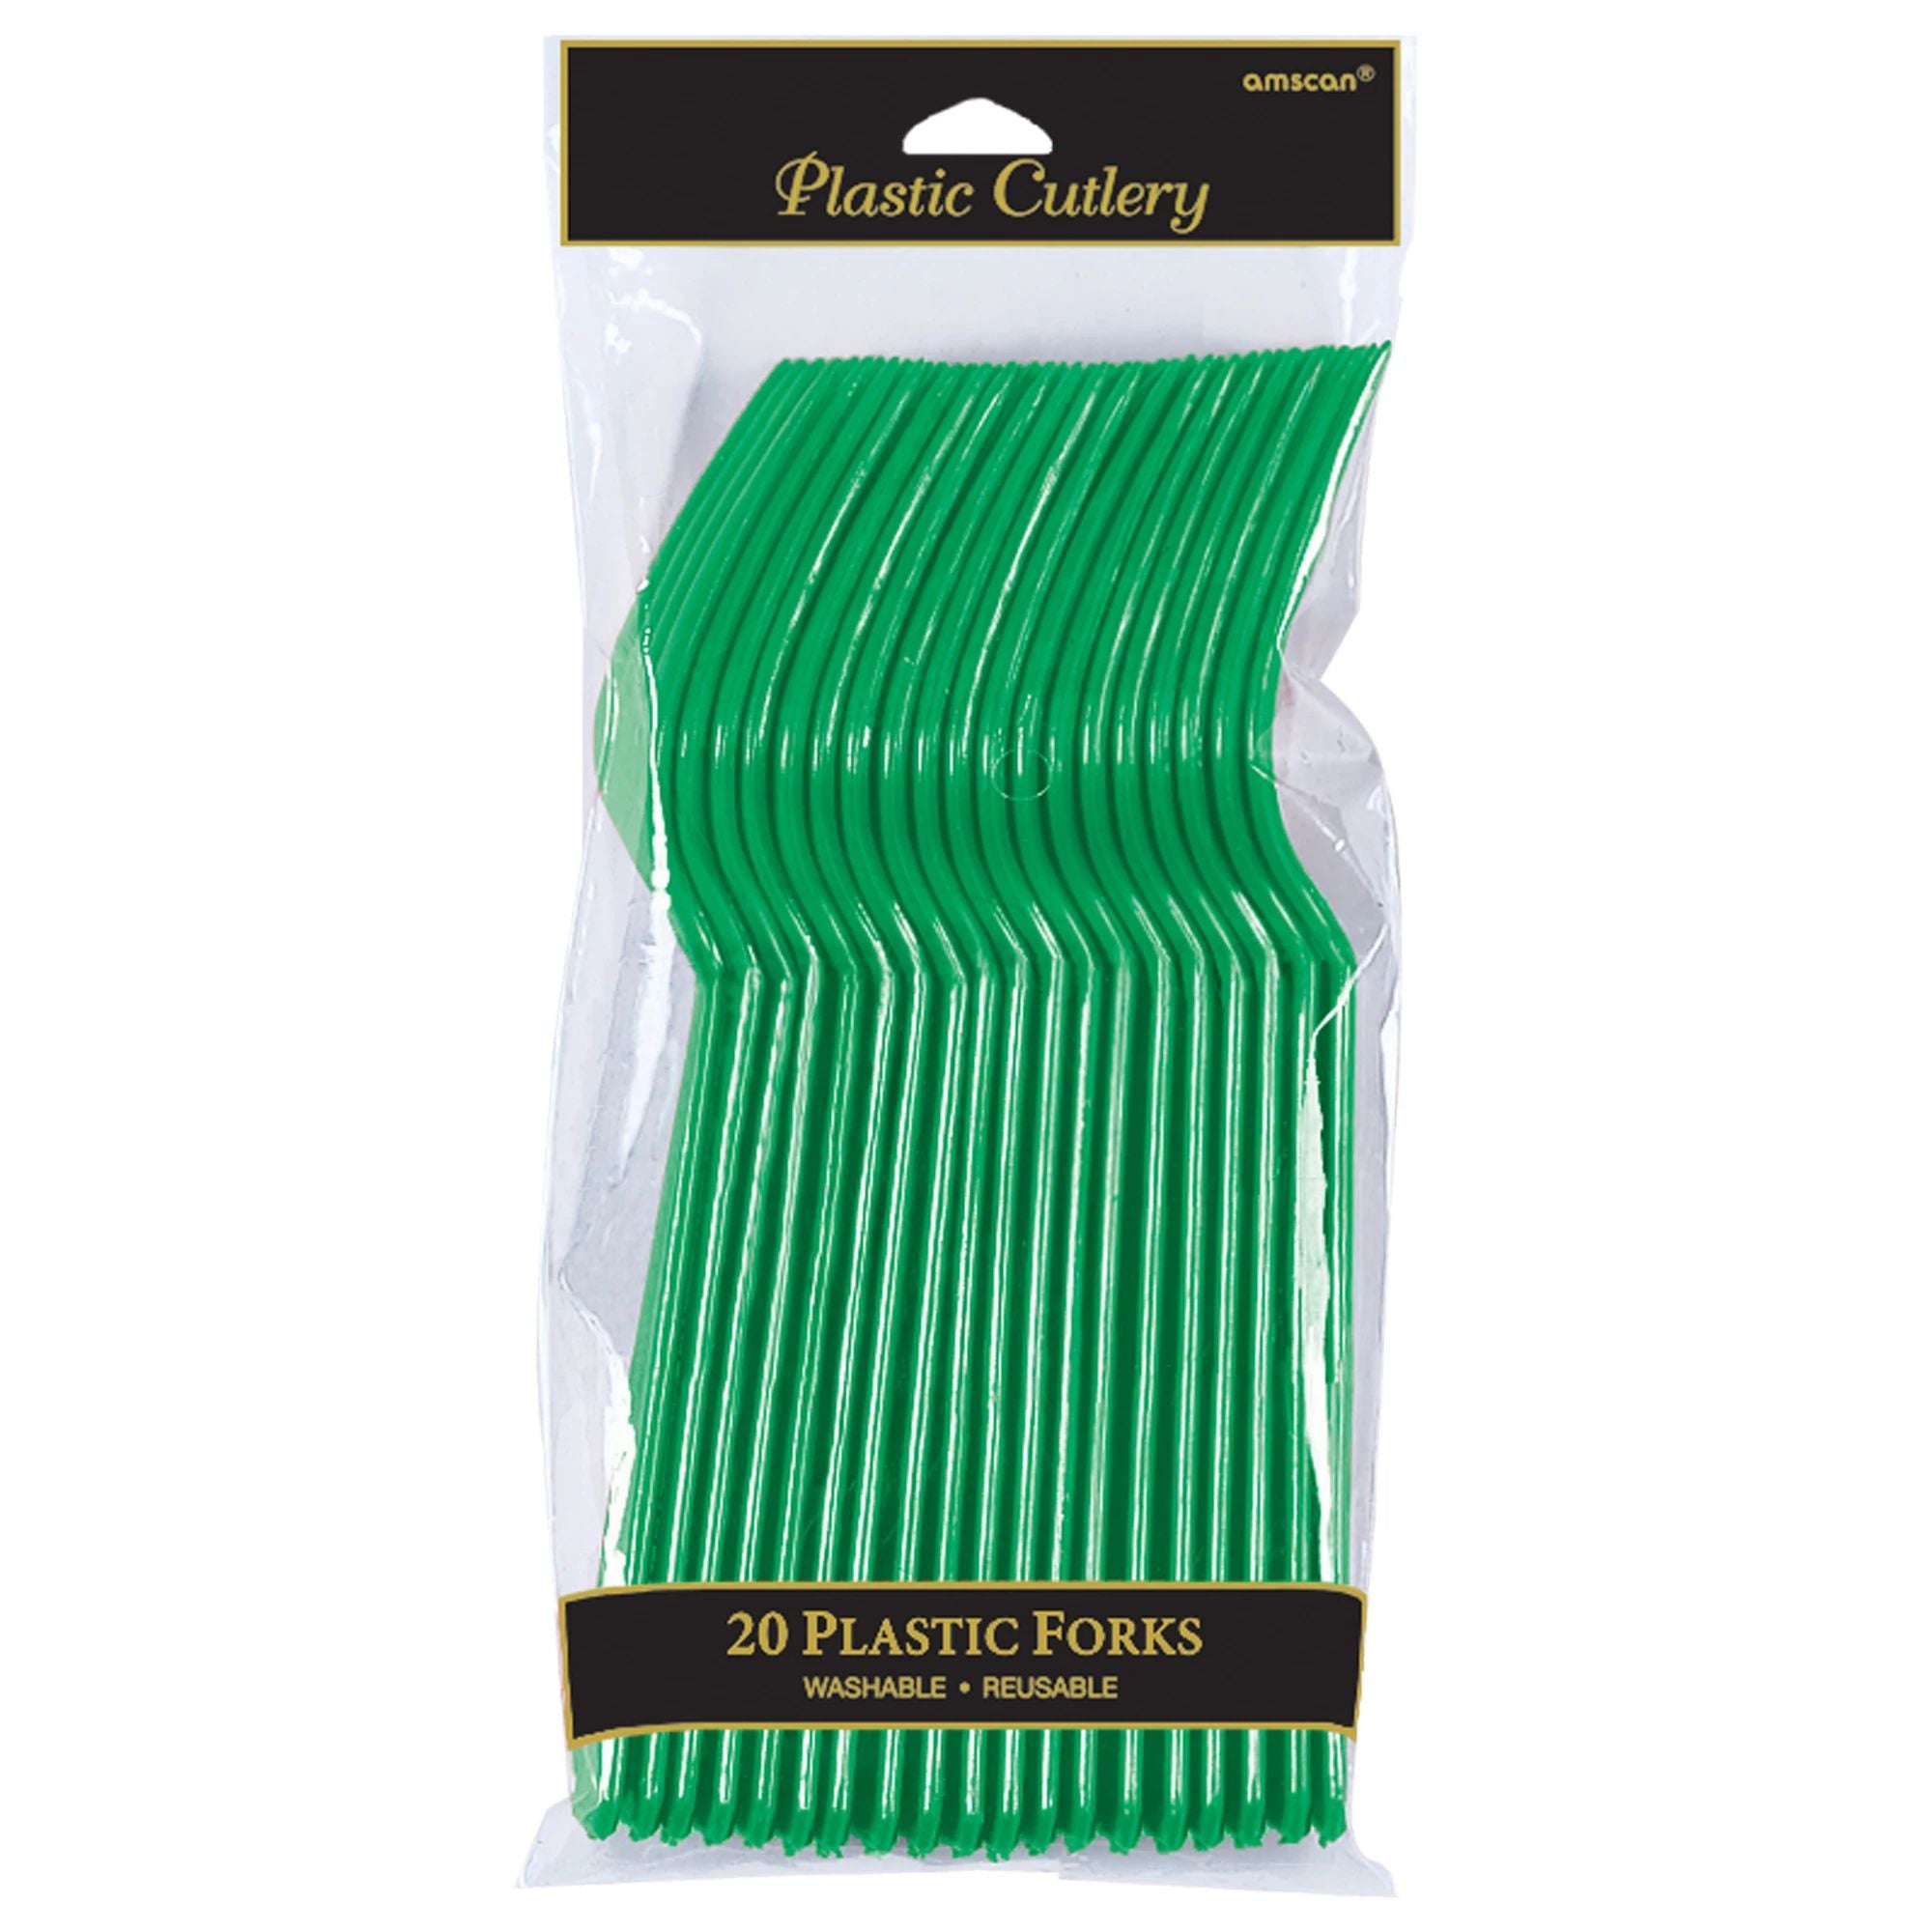 Plastic Forks - Festive Green - 20CT